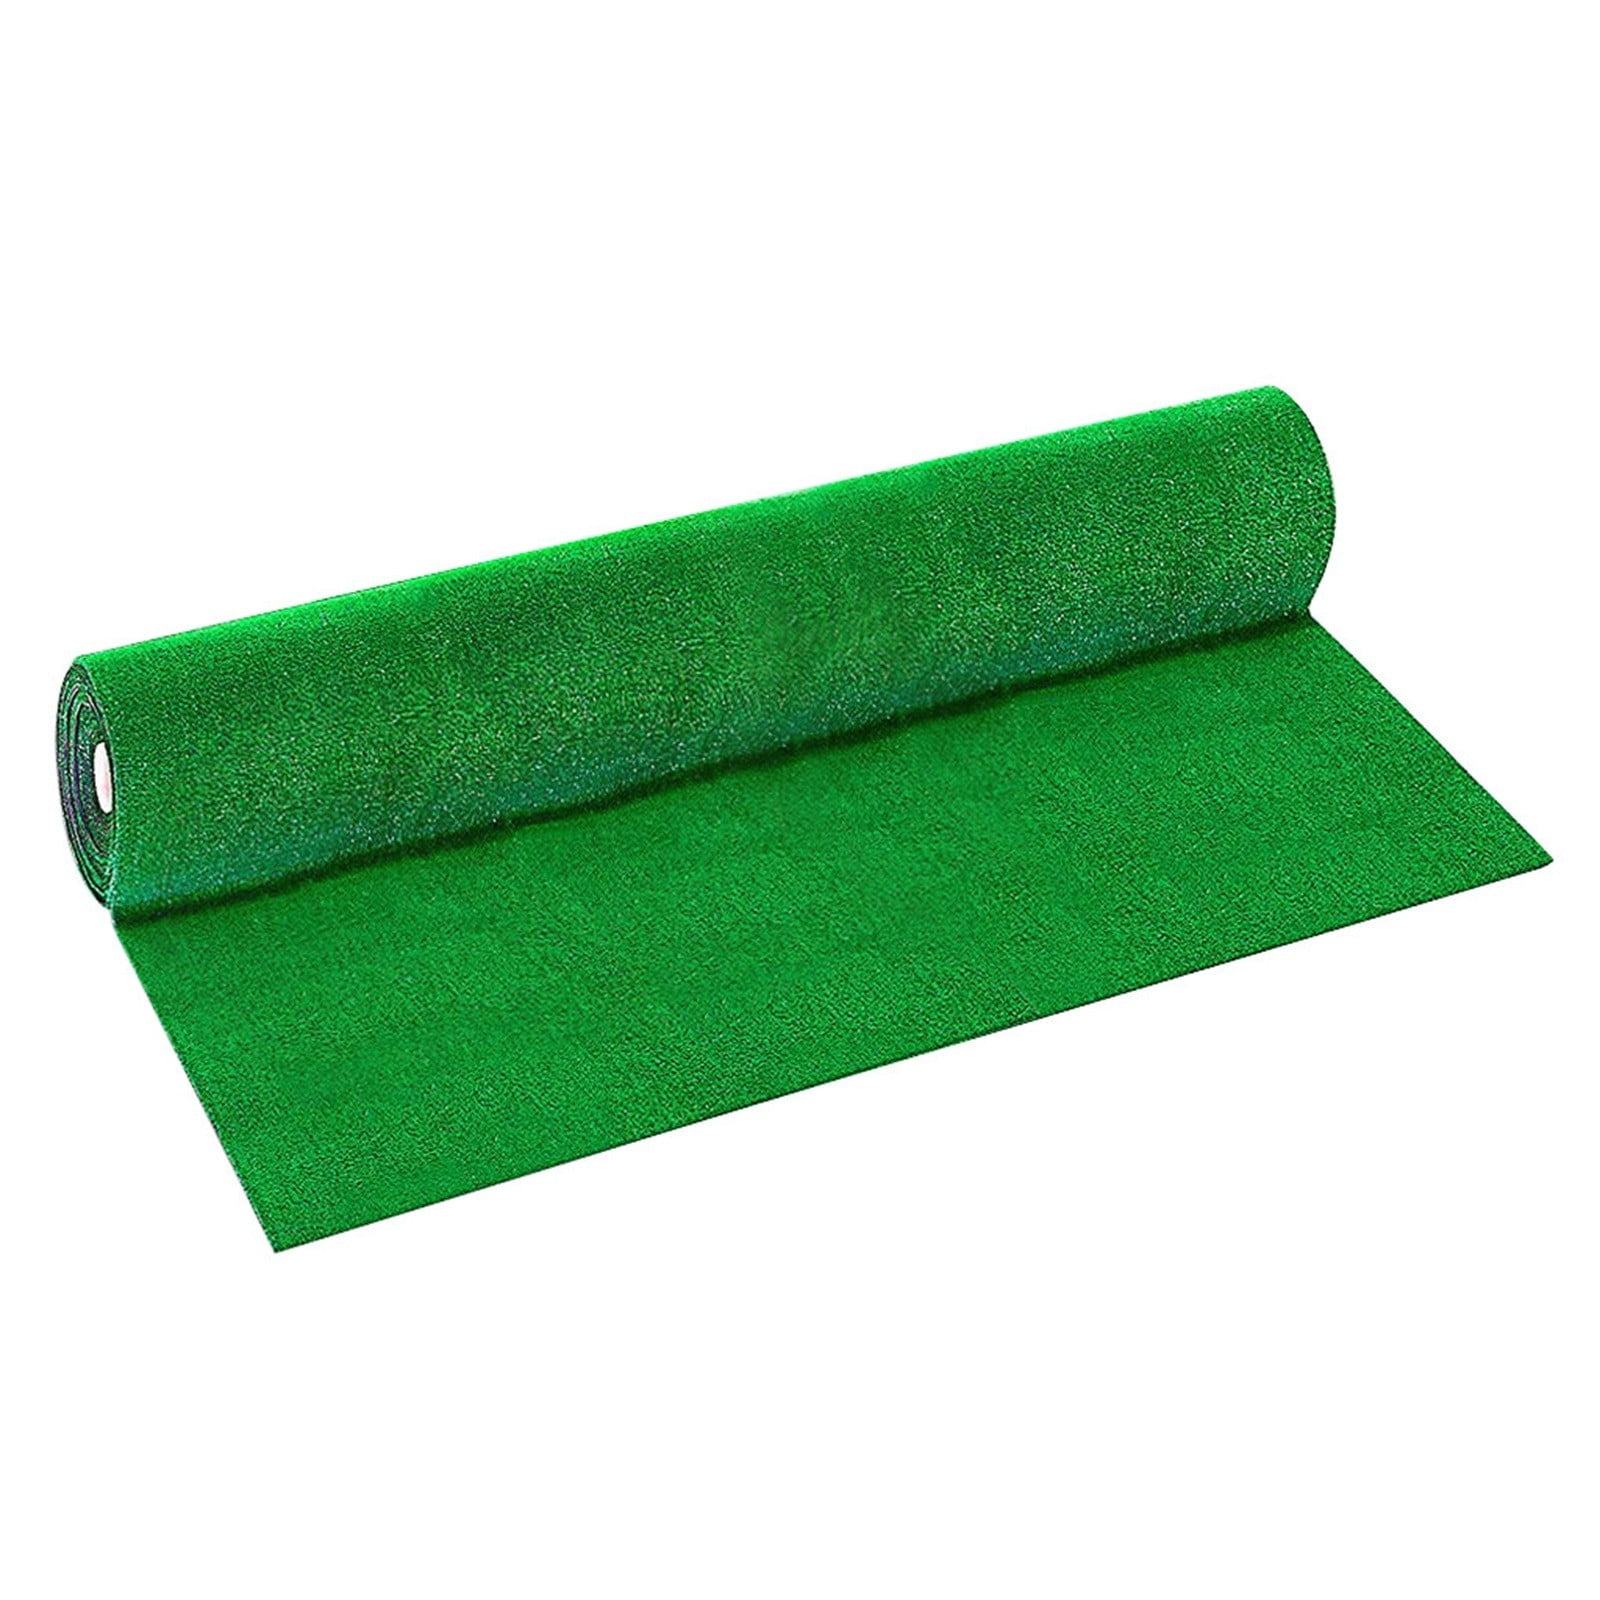 Artificial Grass Carpet Green Fake Synthetic Garden Lawn 2021 Landscape Mat M0T9 